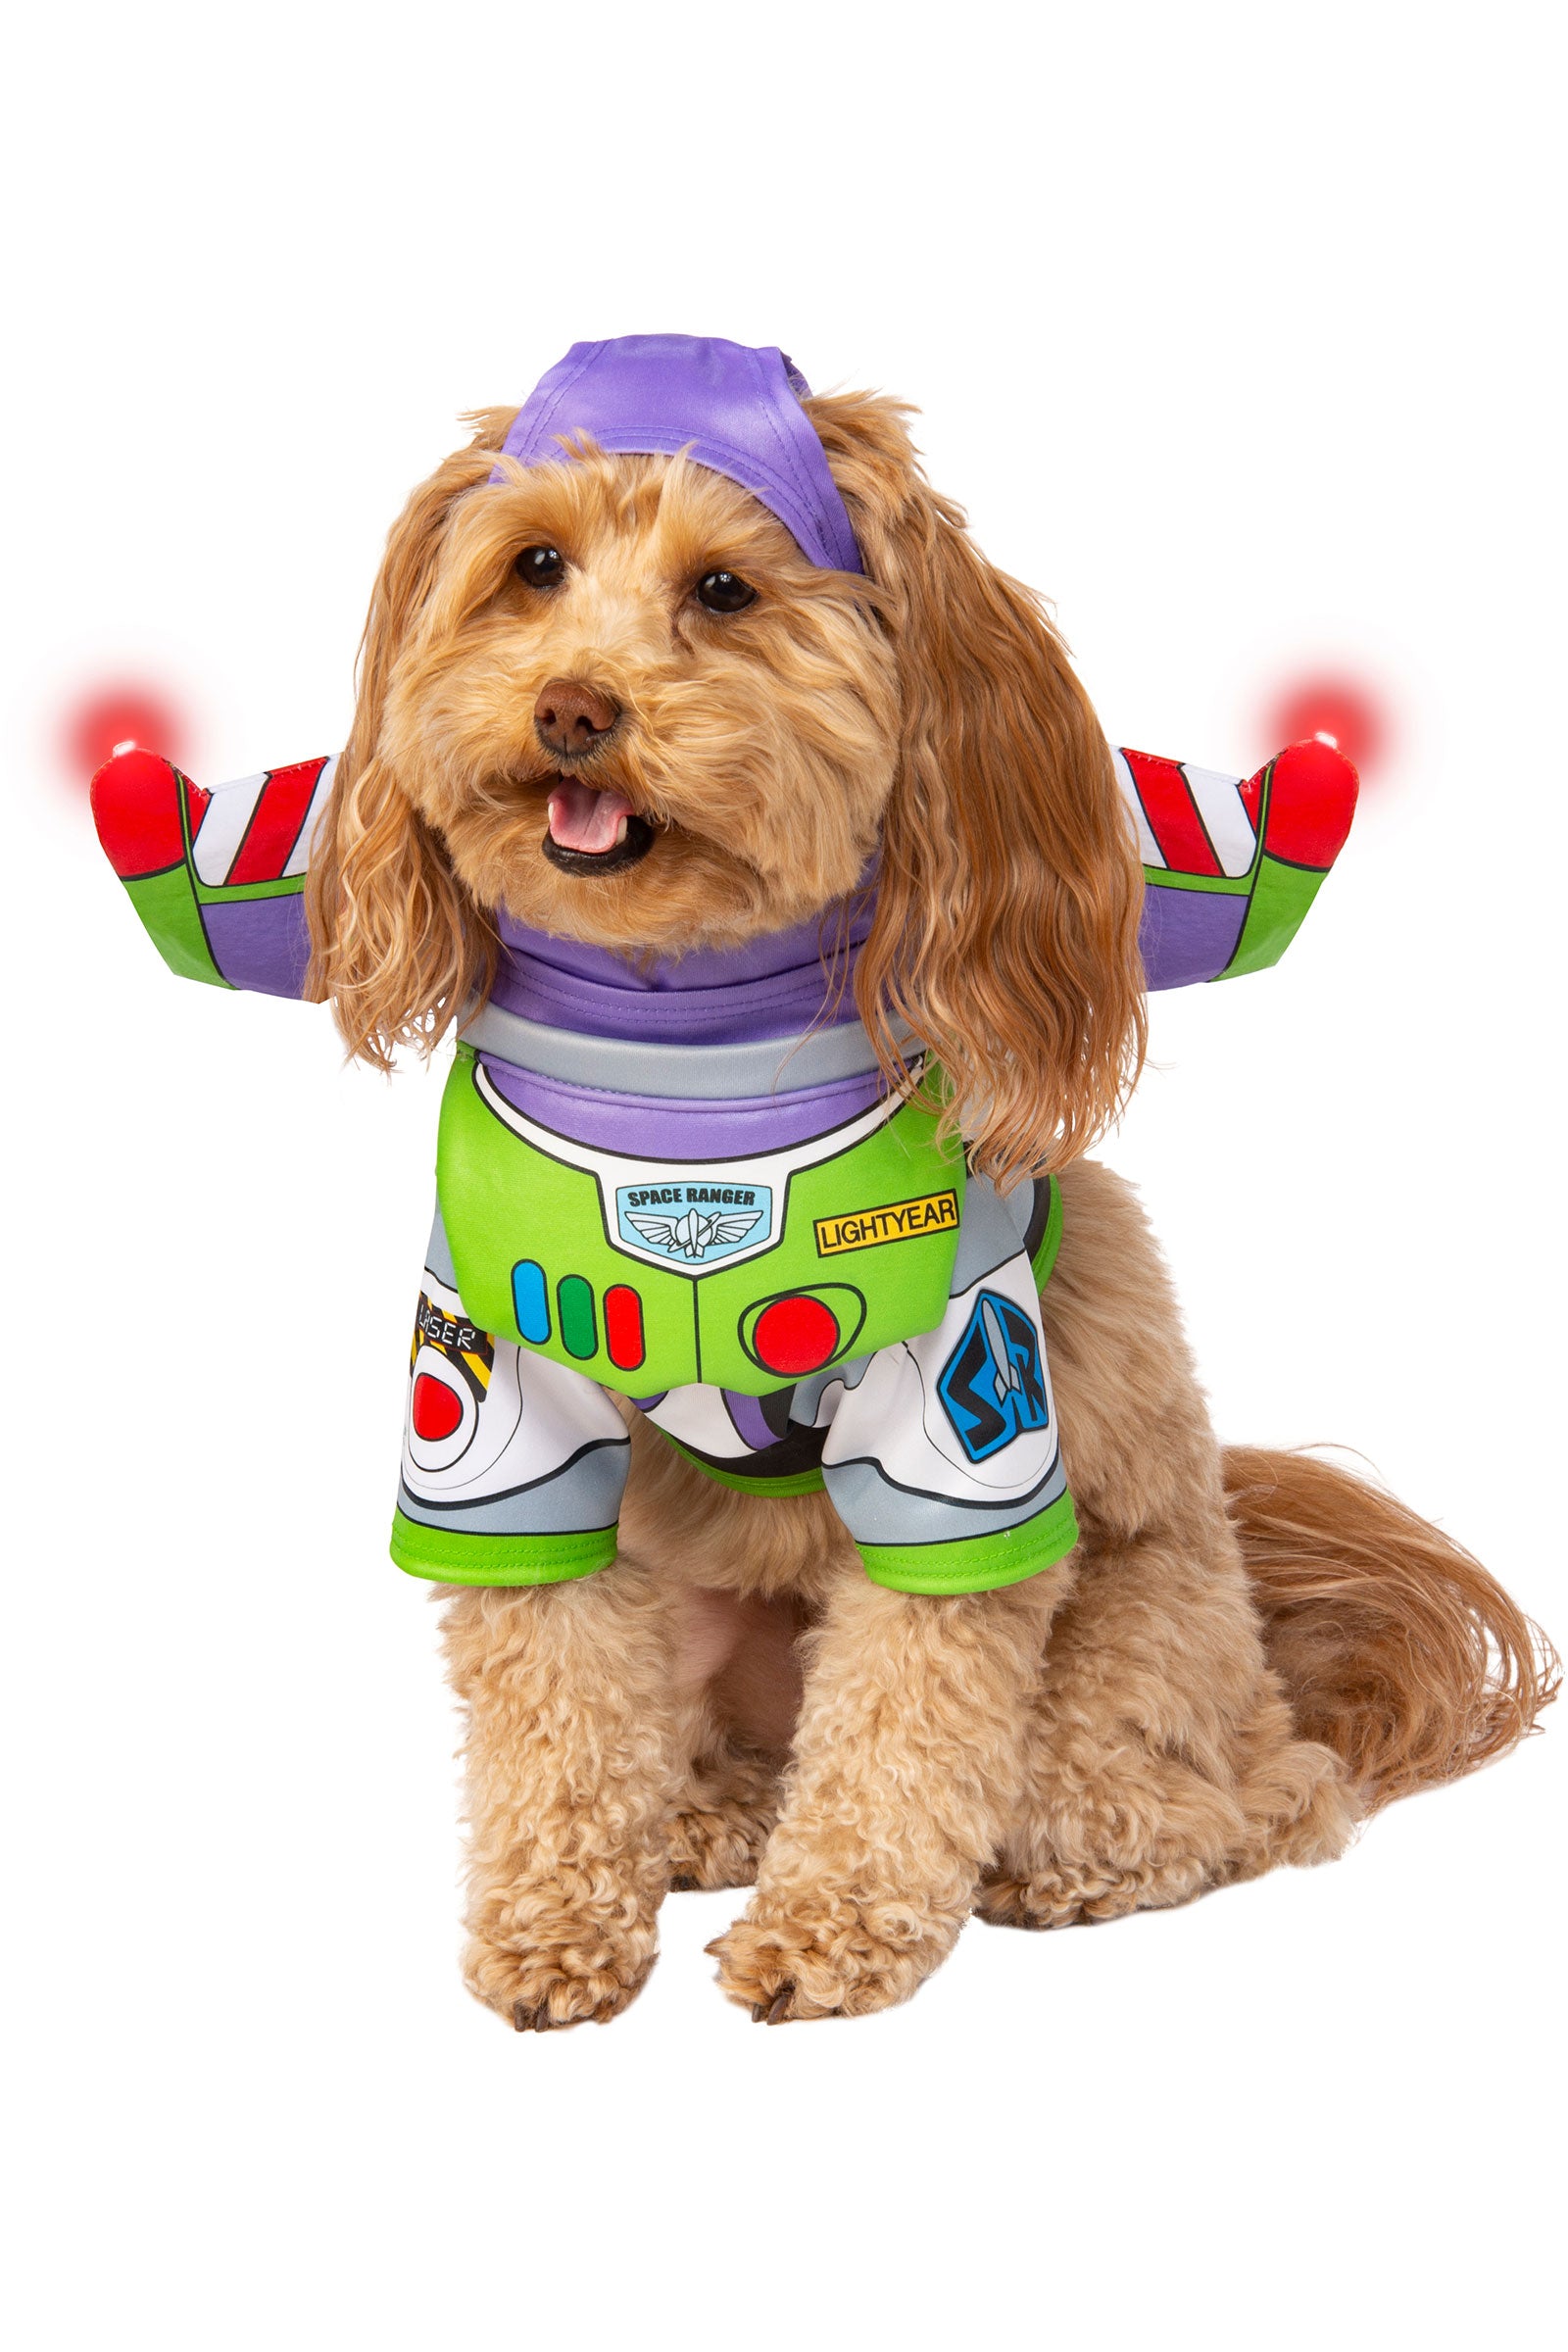 Buzz Lightyear Pet Costume